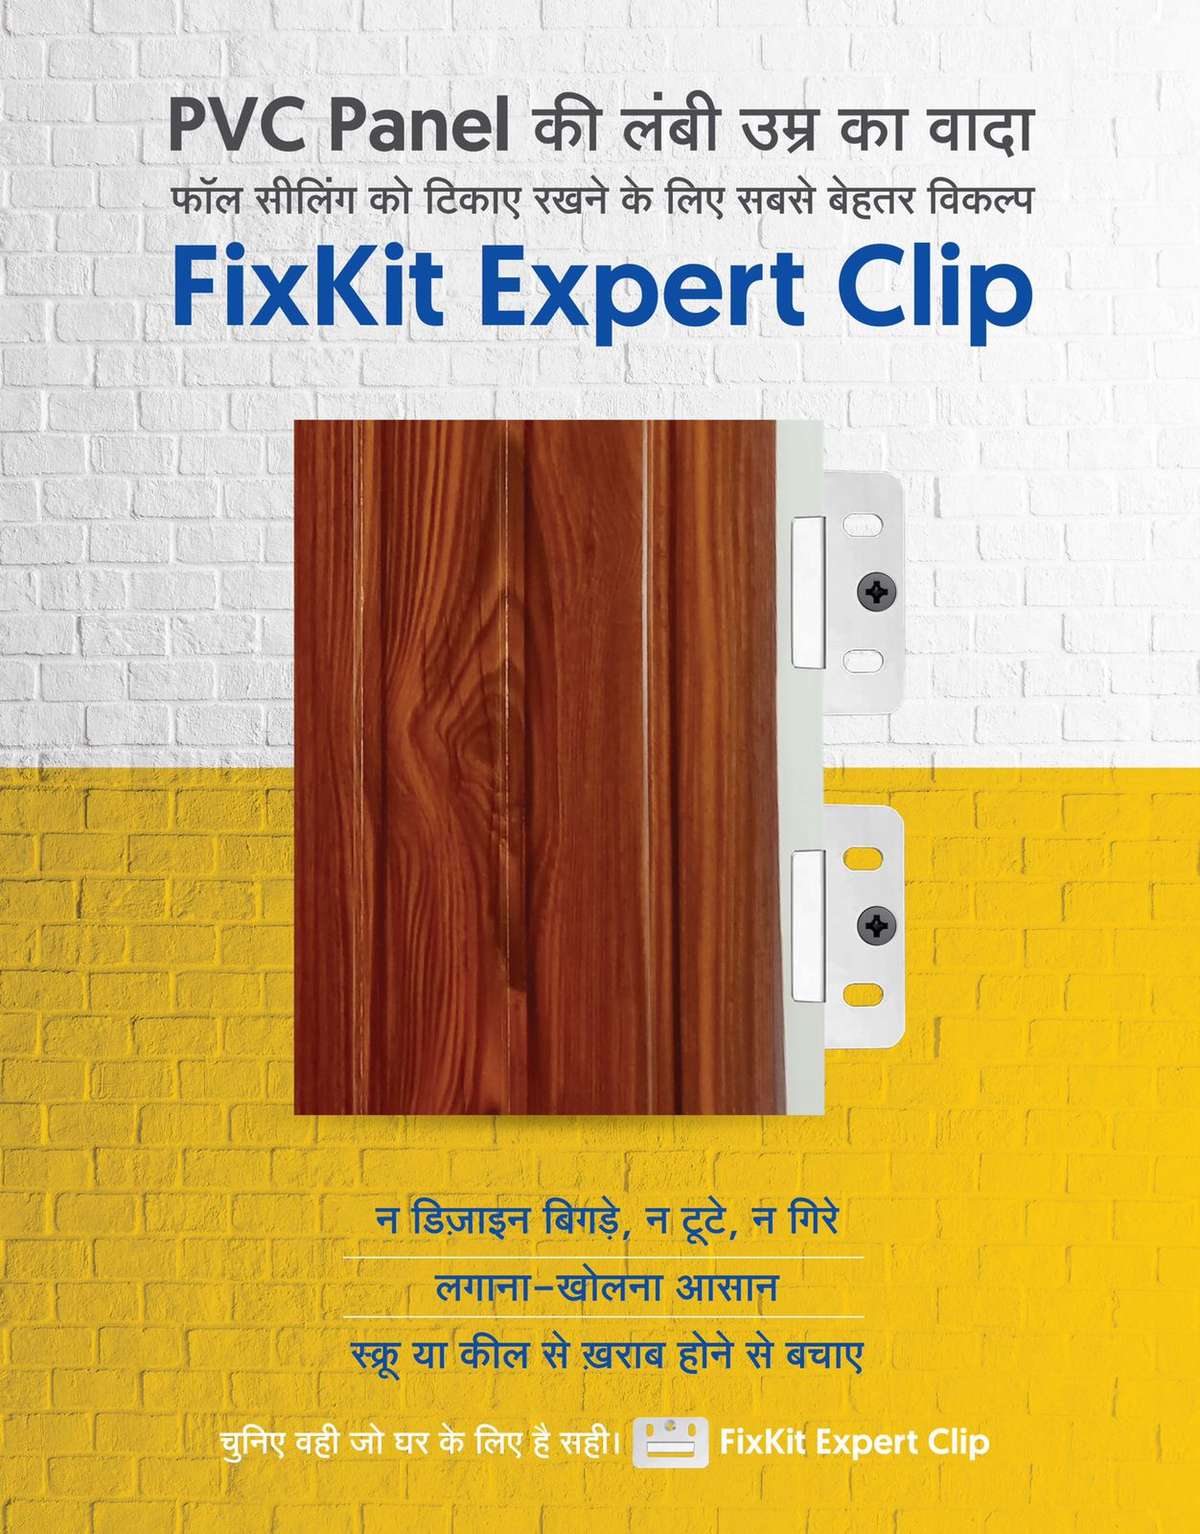 PVC PANEL CLIP
PVC Panel की उमर बढ़ाने का आसन तरीका आ गया आ गया  PVC PANEL Clip.xxxxxxxxxxxxxxxxxxxxxxxxxxxxxxxxxxxxxxxx          PVC Panel  के लॉक को स्क्रू  और किल से खराब होने से बचाए
Expert Clip मदद से लगाना और खोलने मे आसान है 